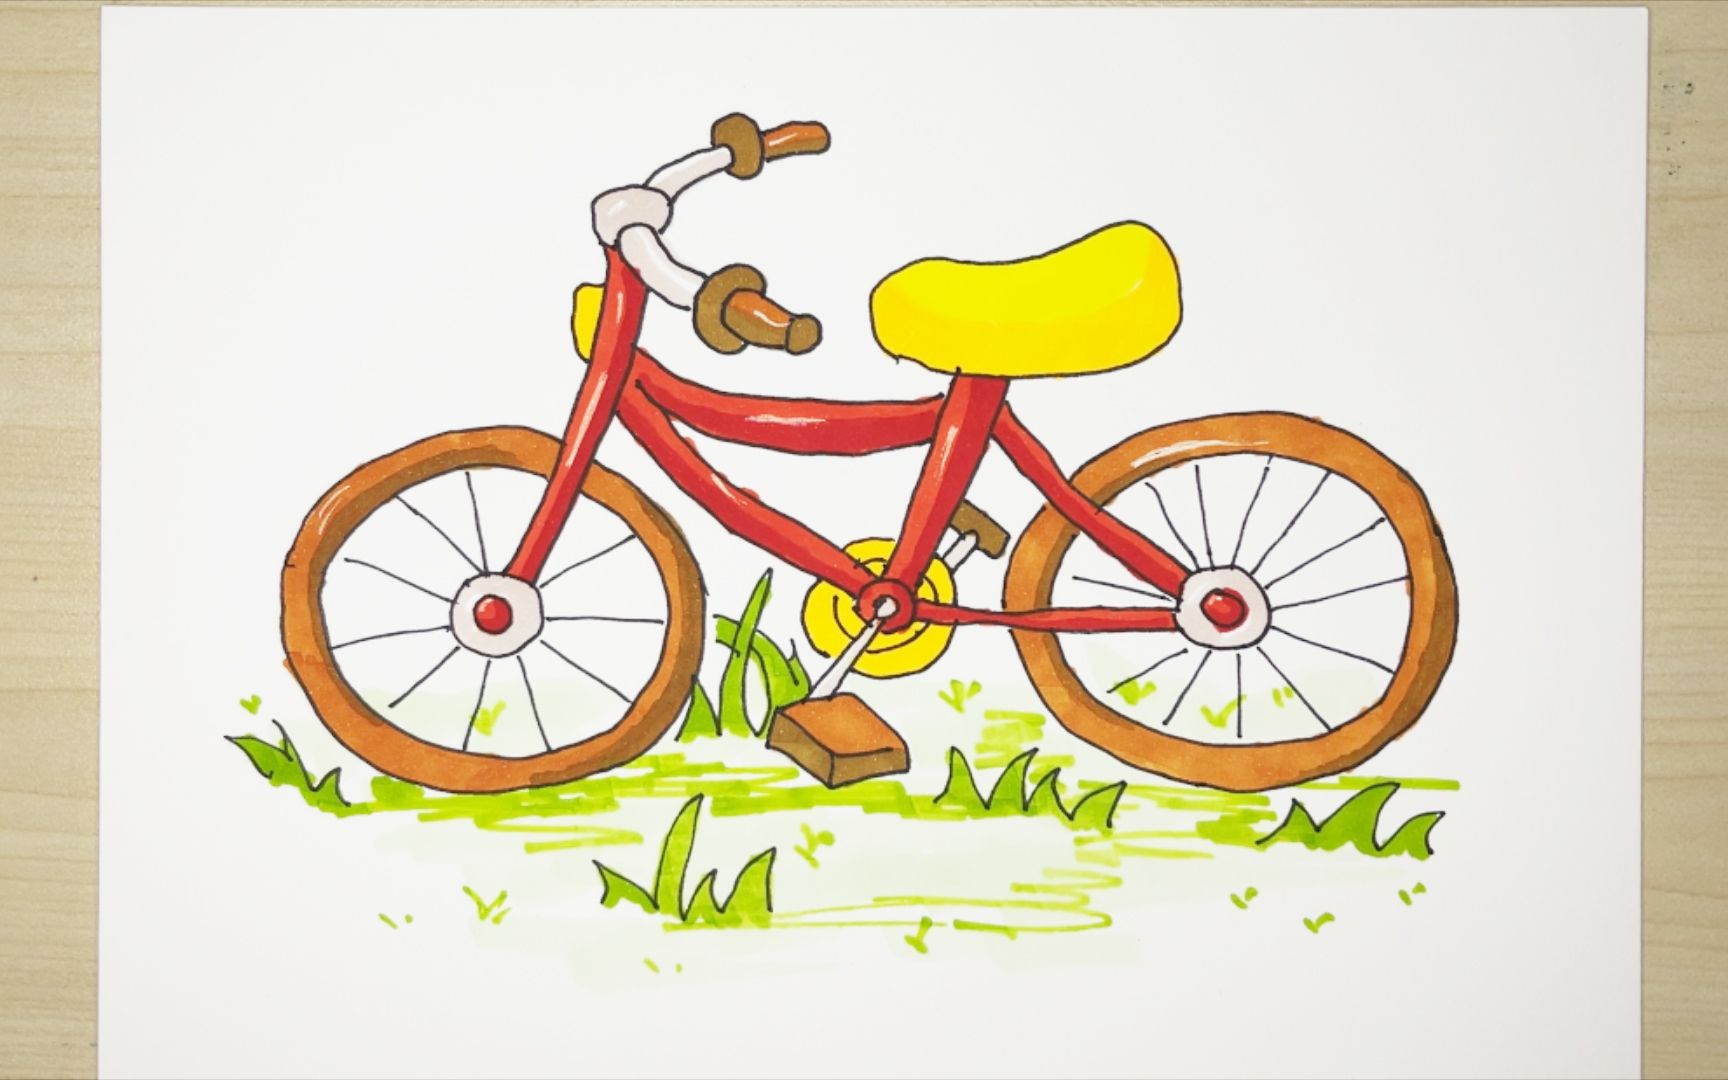 自行车拟人简笔画图片